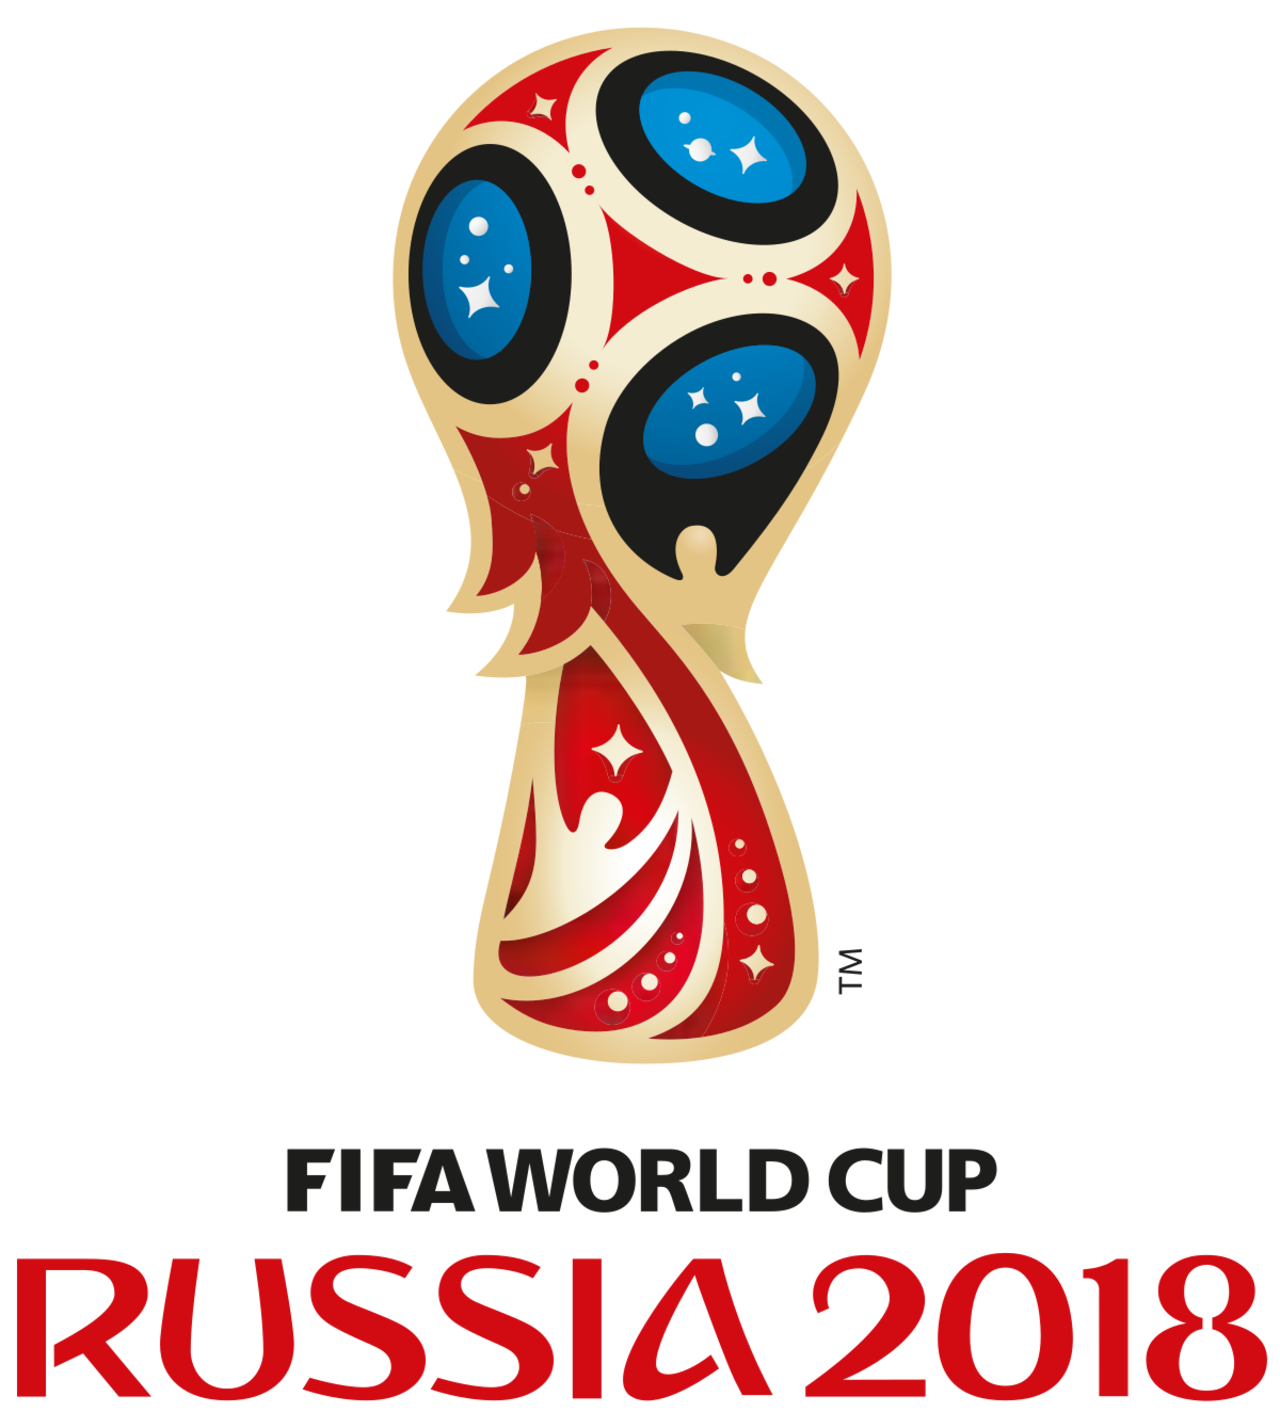 Fotbal világbajnokság 2018